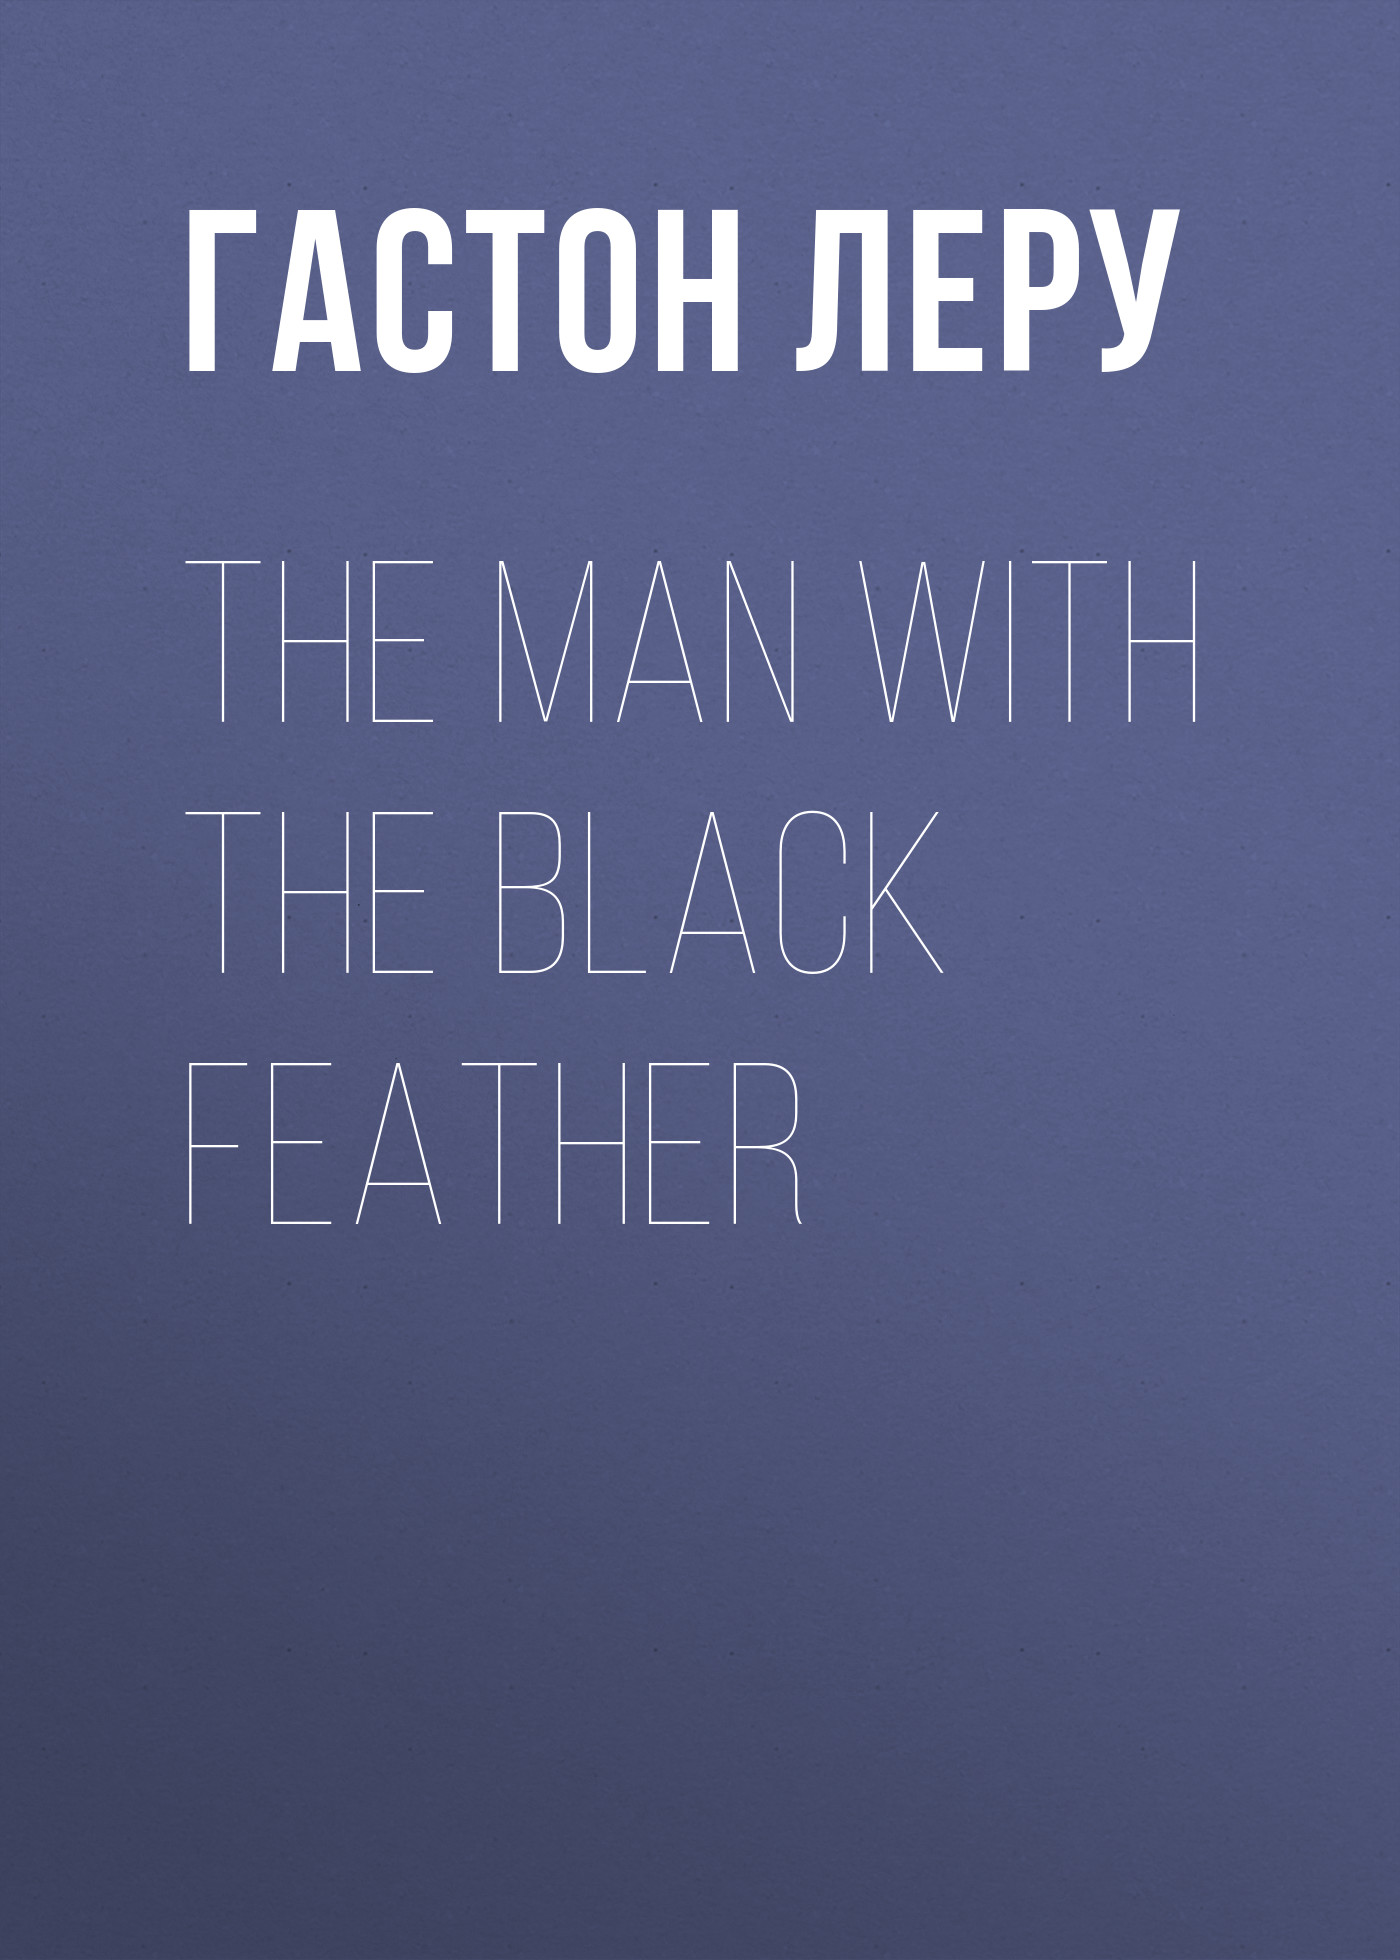 Книга The Man with the Black Feather из серии , созданная Гастон Леру, может относится к жанру Литература 20 века, Классические детективы, Зарубежные детективы. Стоимость электронной книги The Man with the Black Feather с идентификатором 34839838 составляет 0 руб.